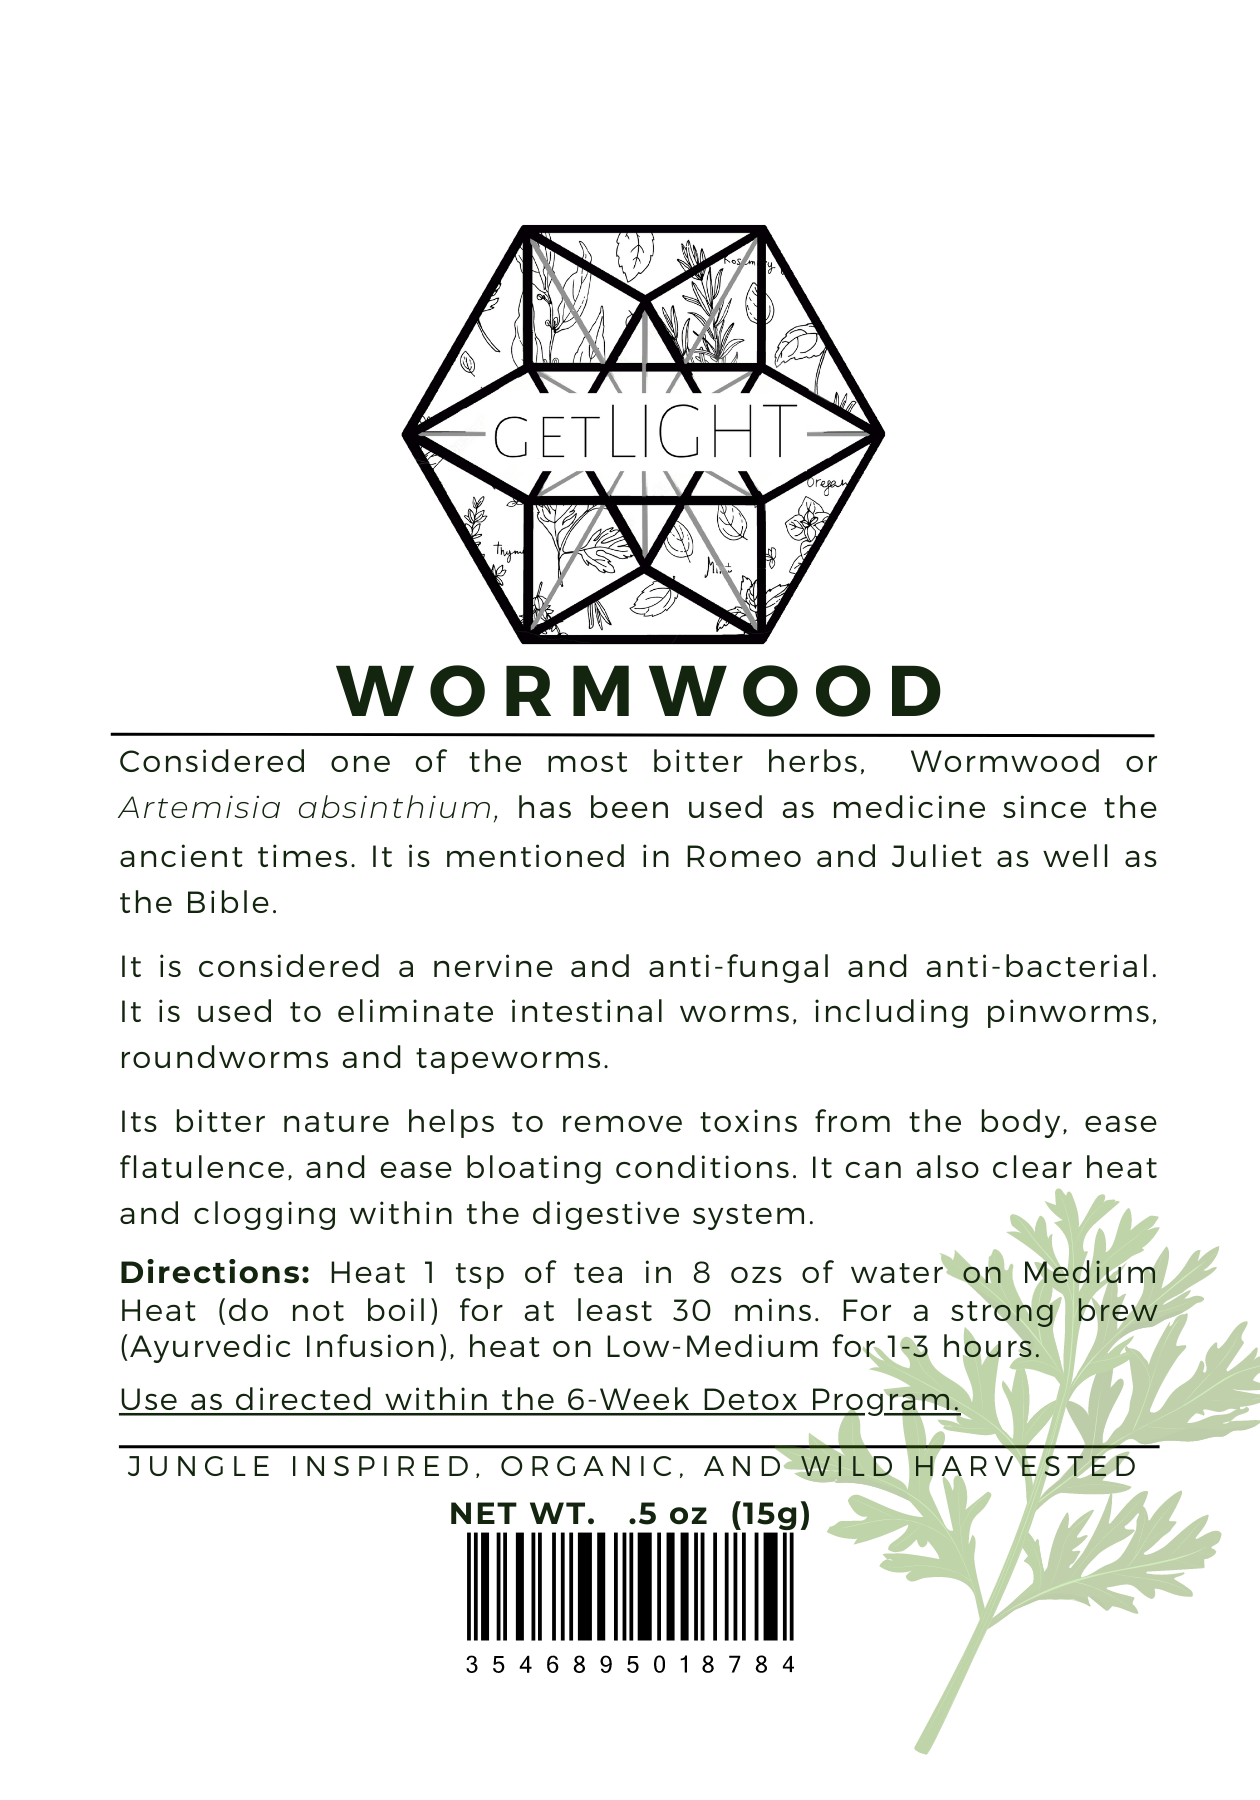 Wormwood Benefits